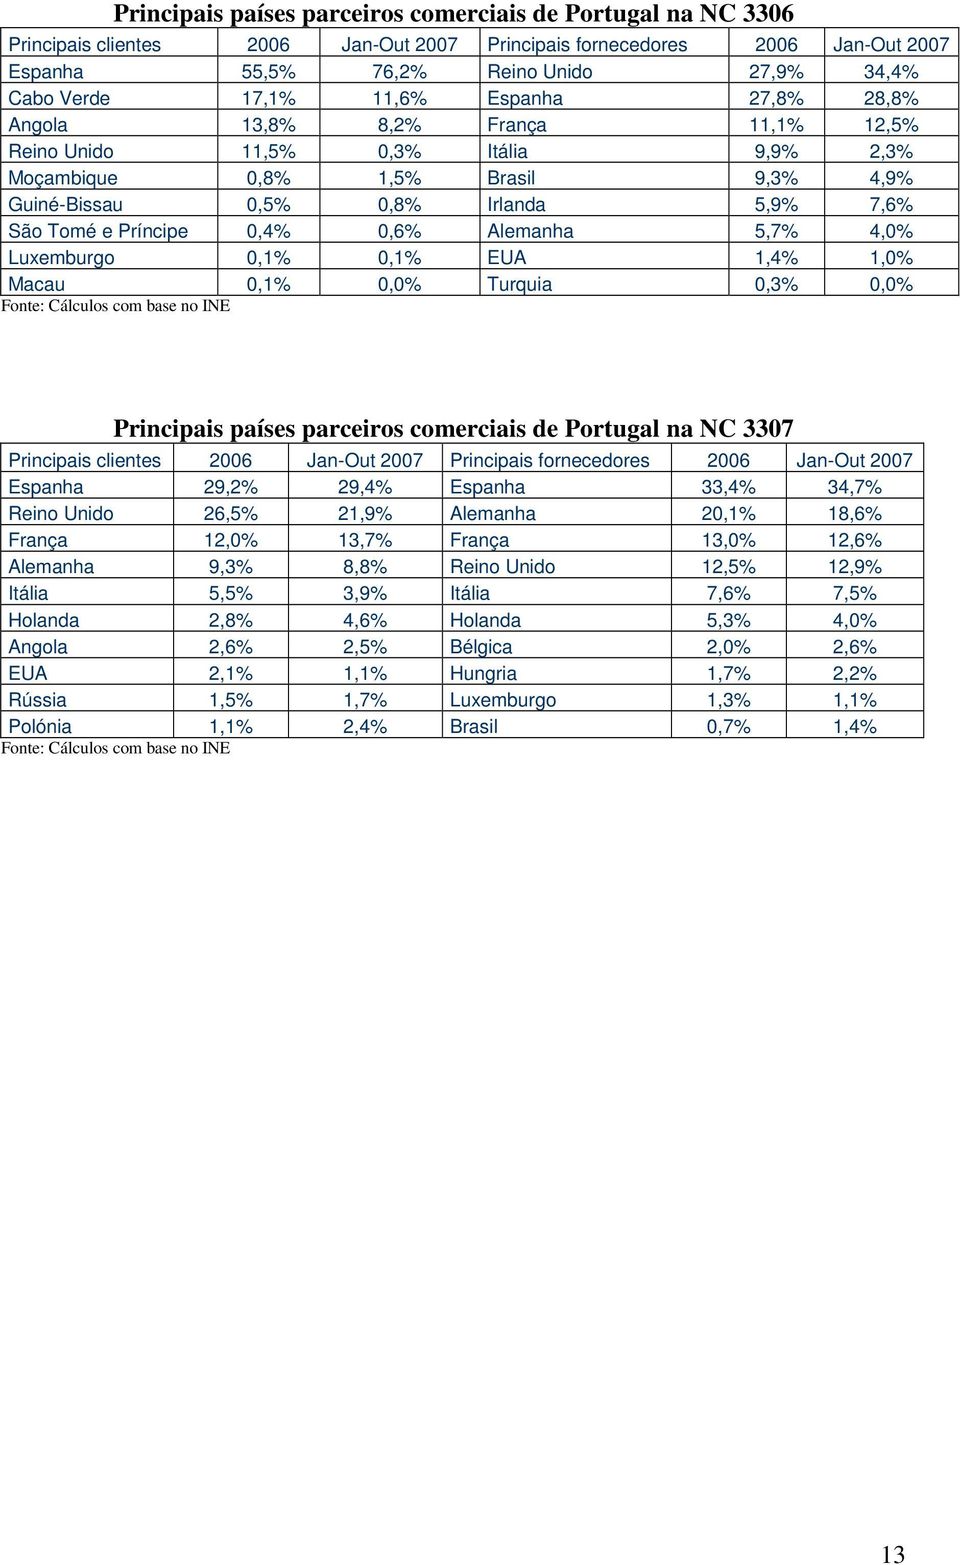 Príncipe 0,4% 0,6% Alemanha 5,7% 4,0% Luxemburgo 0,1% 0,1% EUA 1,4% 1,0% Macau 0,1% 0,0% Turquia 0,3% 0,0% Principais países parceiros comerciais de Portugal na NC 3307 Principais clientes 2006